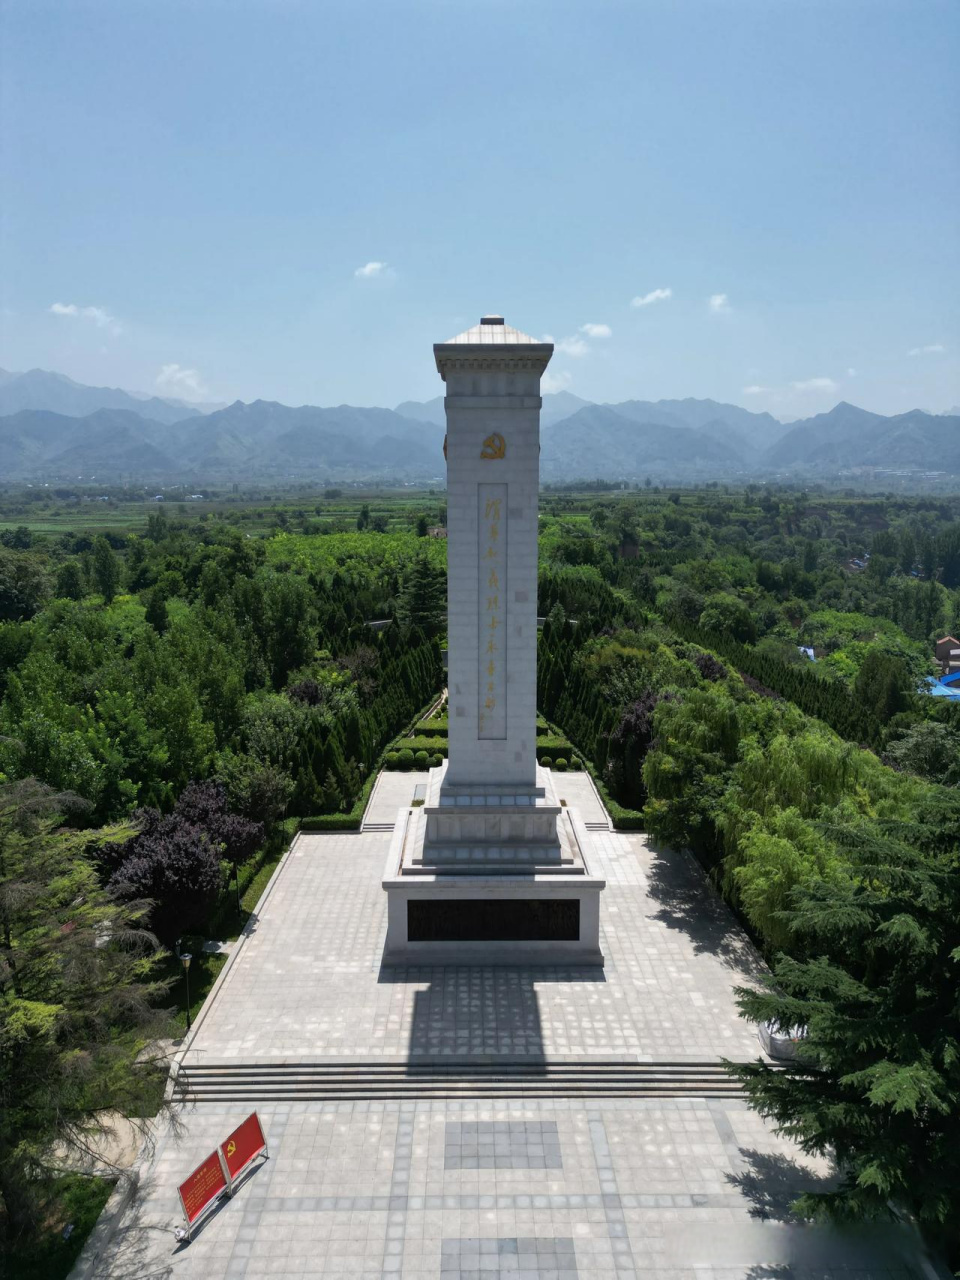 渭华起义纪念馆位于秦岭三百峪之涧峪出口三公里,来这里感悟革命先烈